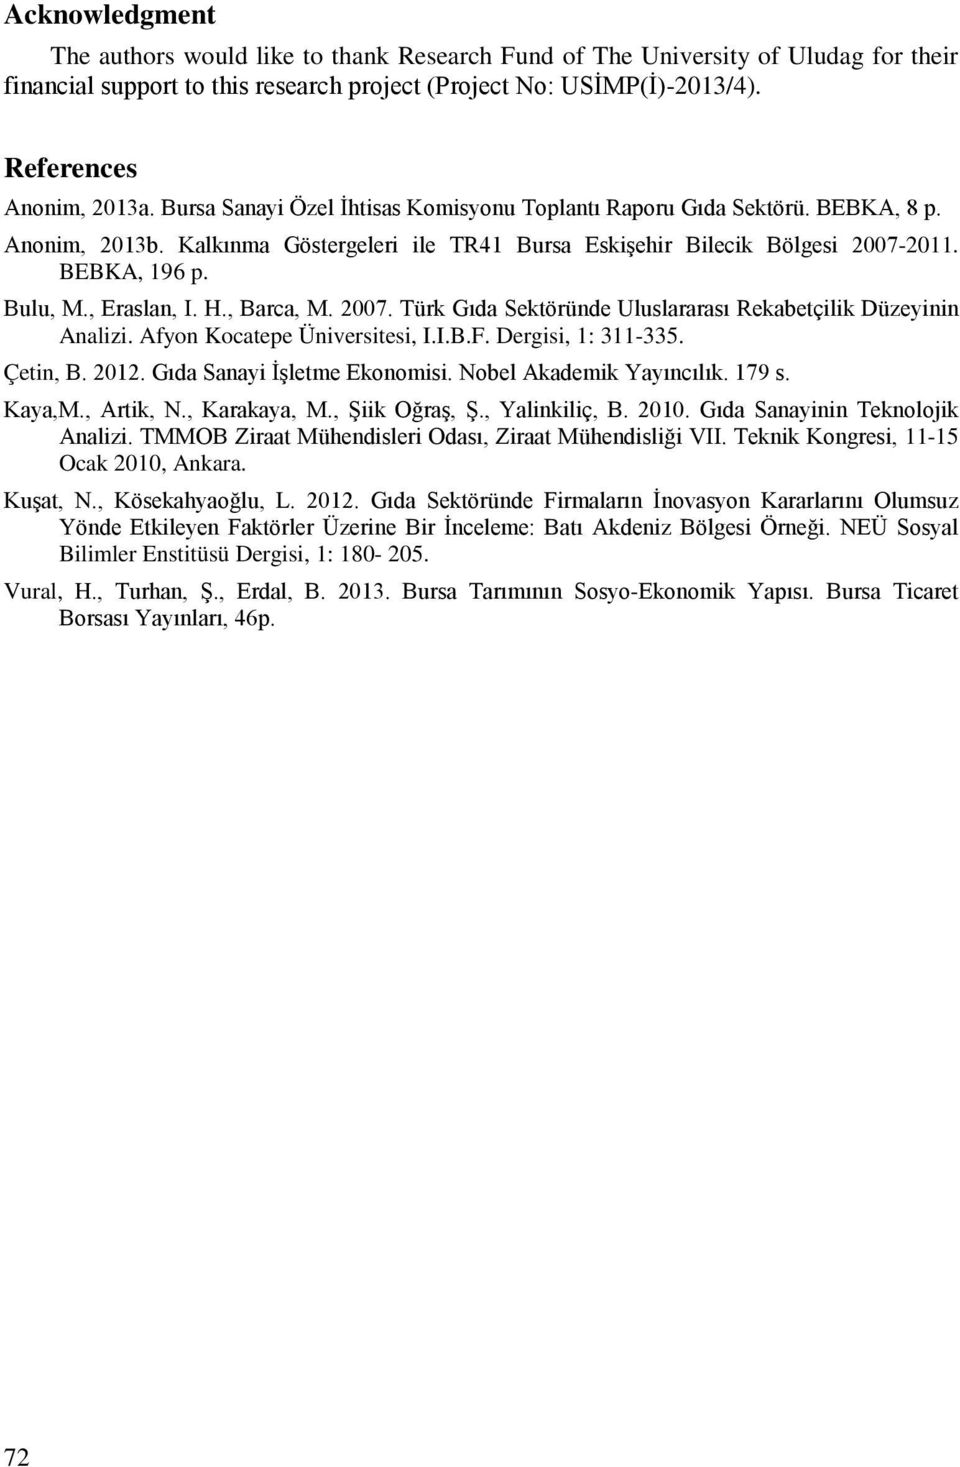 , Eraslan, I. H., Barca, M. 2007. Türk Gıda Sektöründe Uluslararası Rekabetçilik Düzeyinin Analizi. Afyon Kocatepe Üniversitesi, I.I.B.F. Dergisi, 1: 311-335. Çetin, B. 2012.